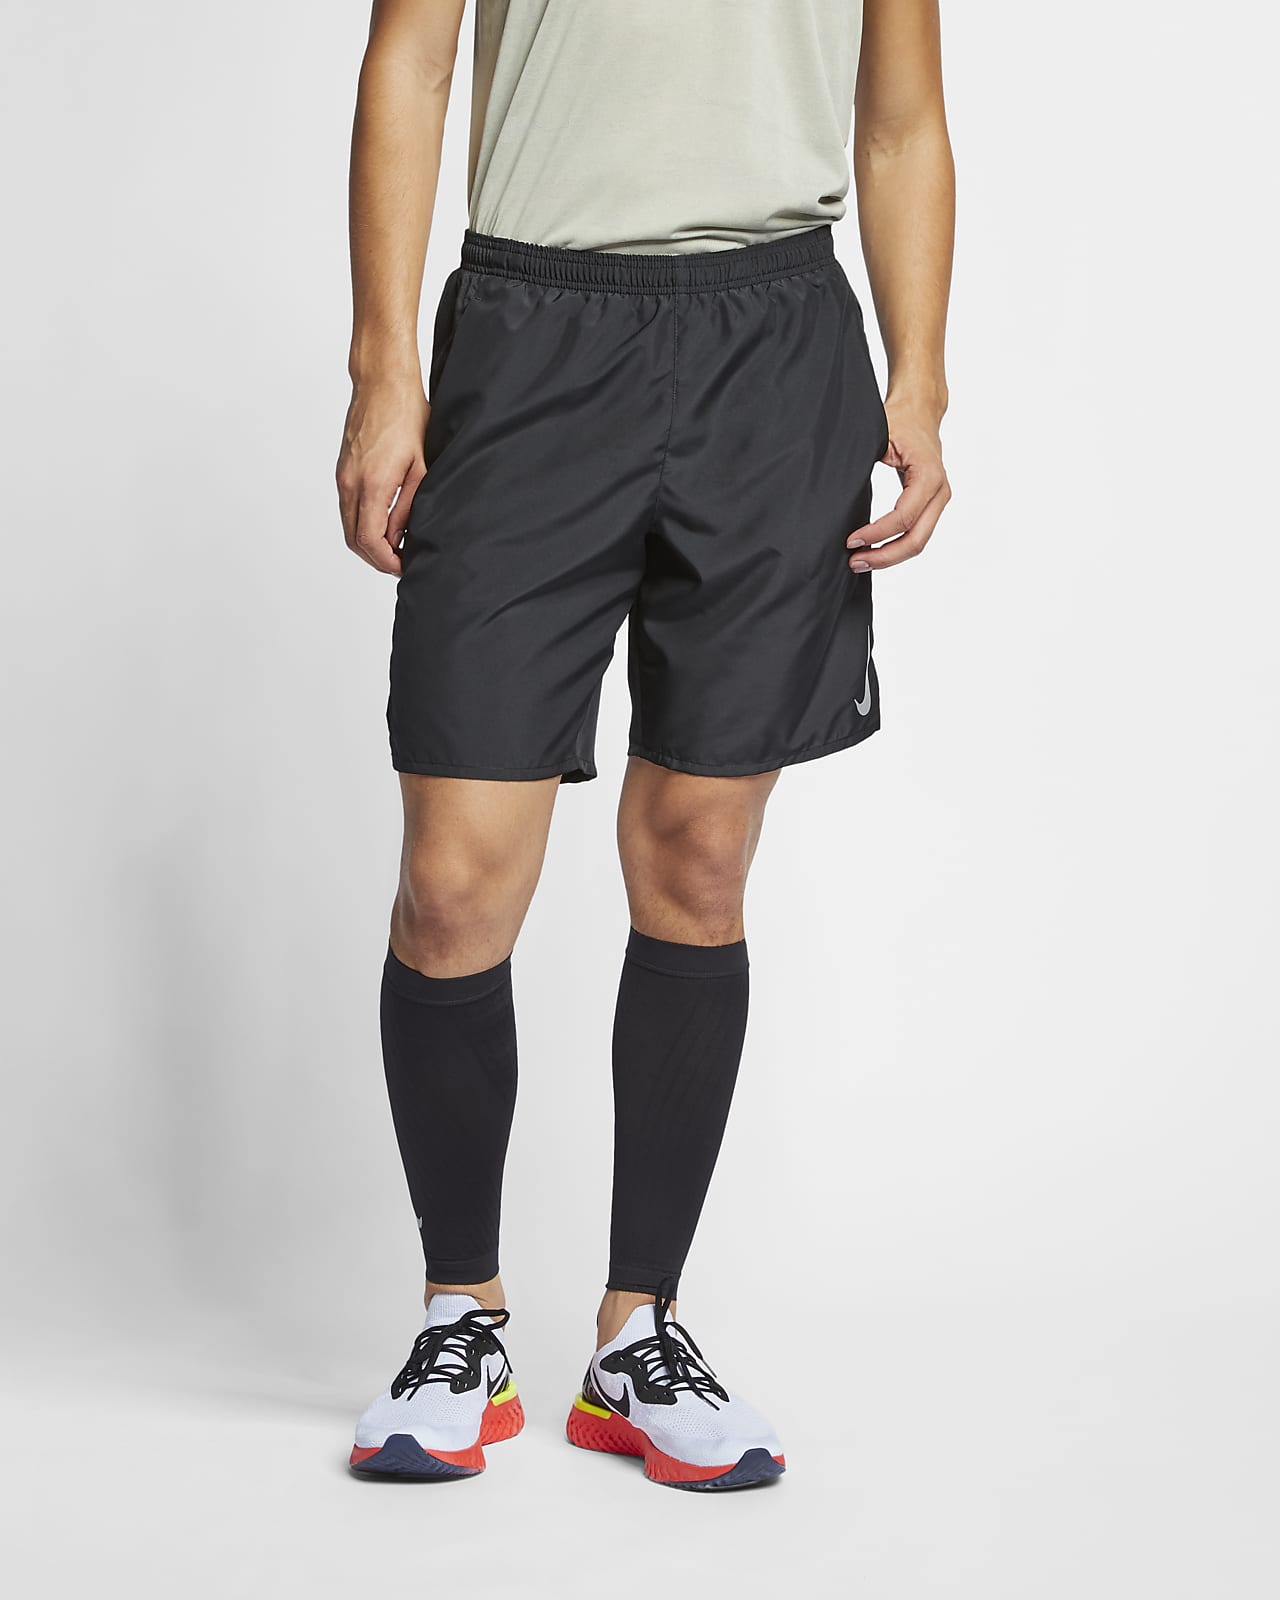 Nike Challenger Herren-Laufshorts mit integriertem Slip (ca. 23 cm)